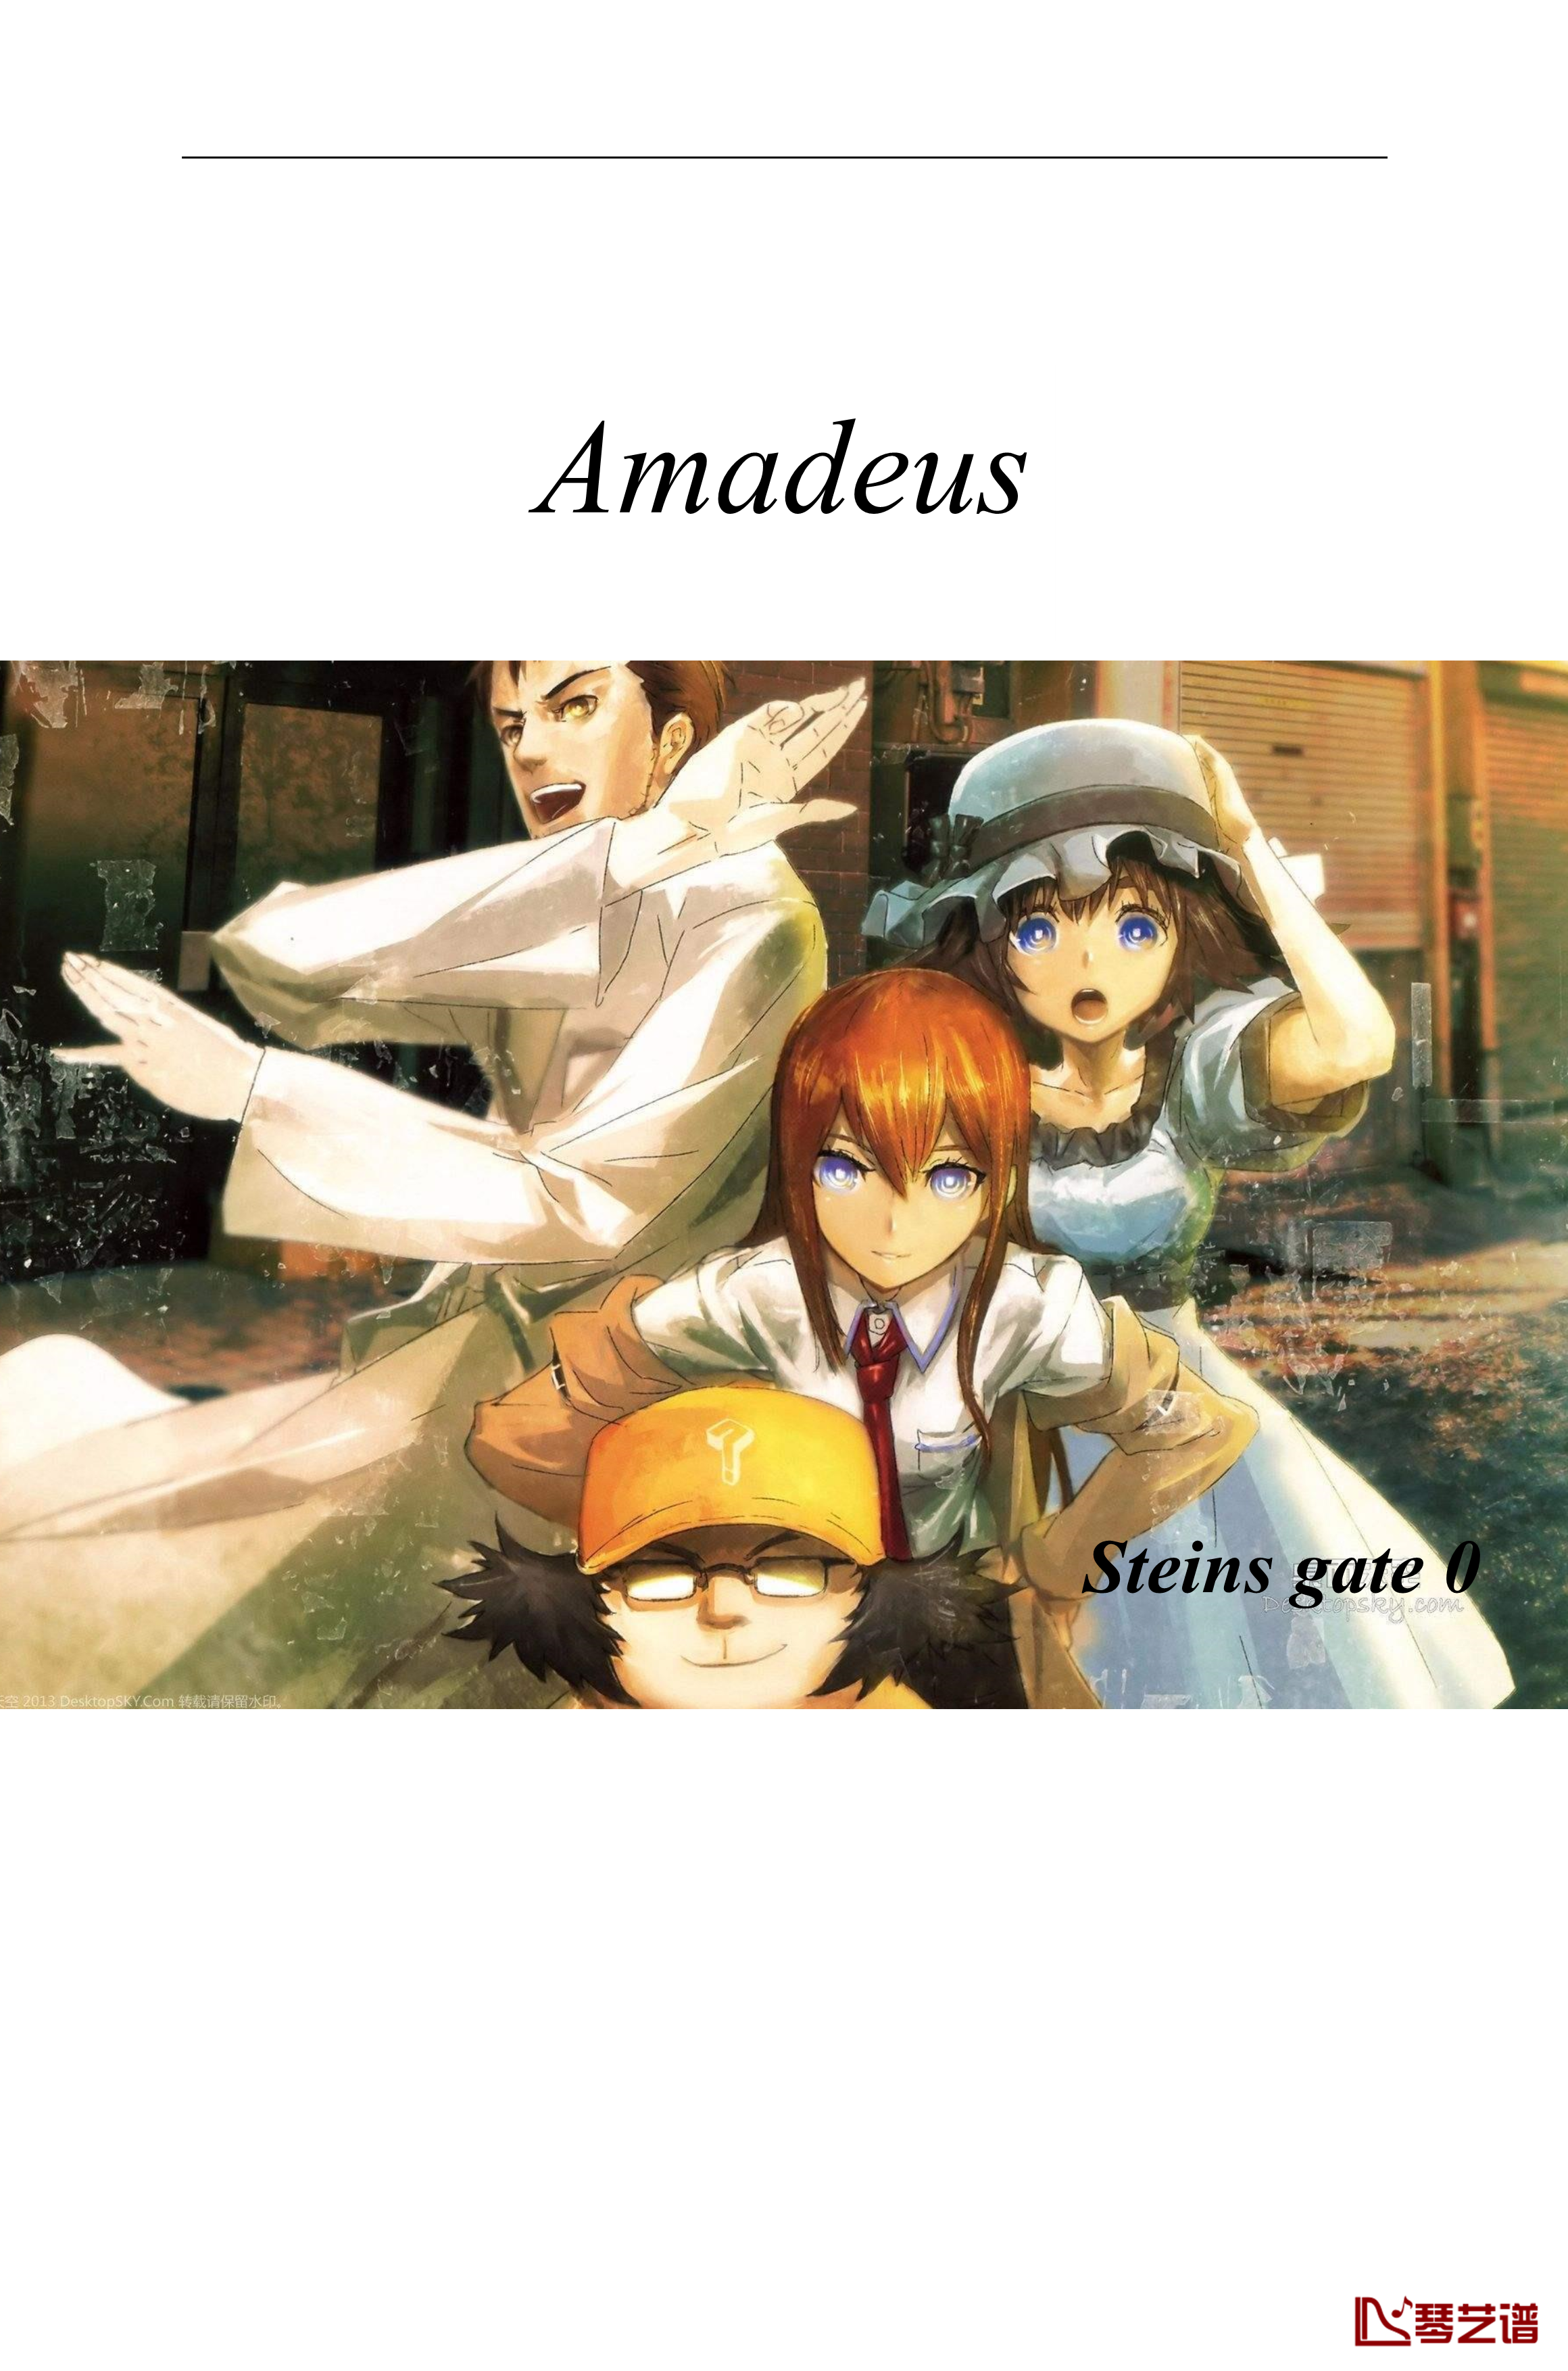 命运石之门0钢琴谱-OP(Steins gate 0)Amadeus-full-ver.-伊藤香奈子